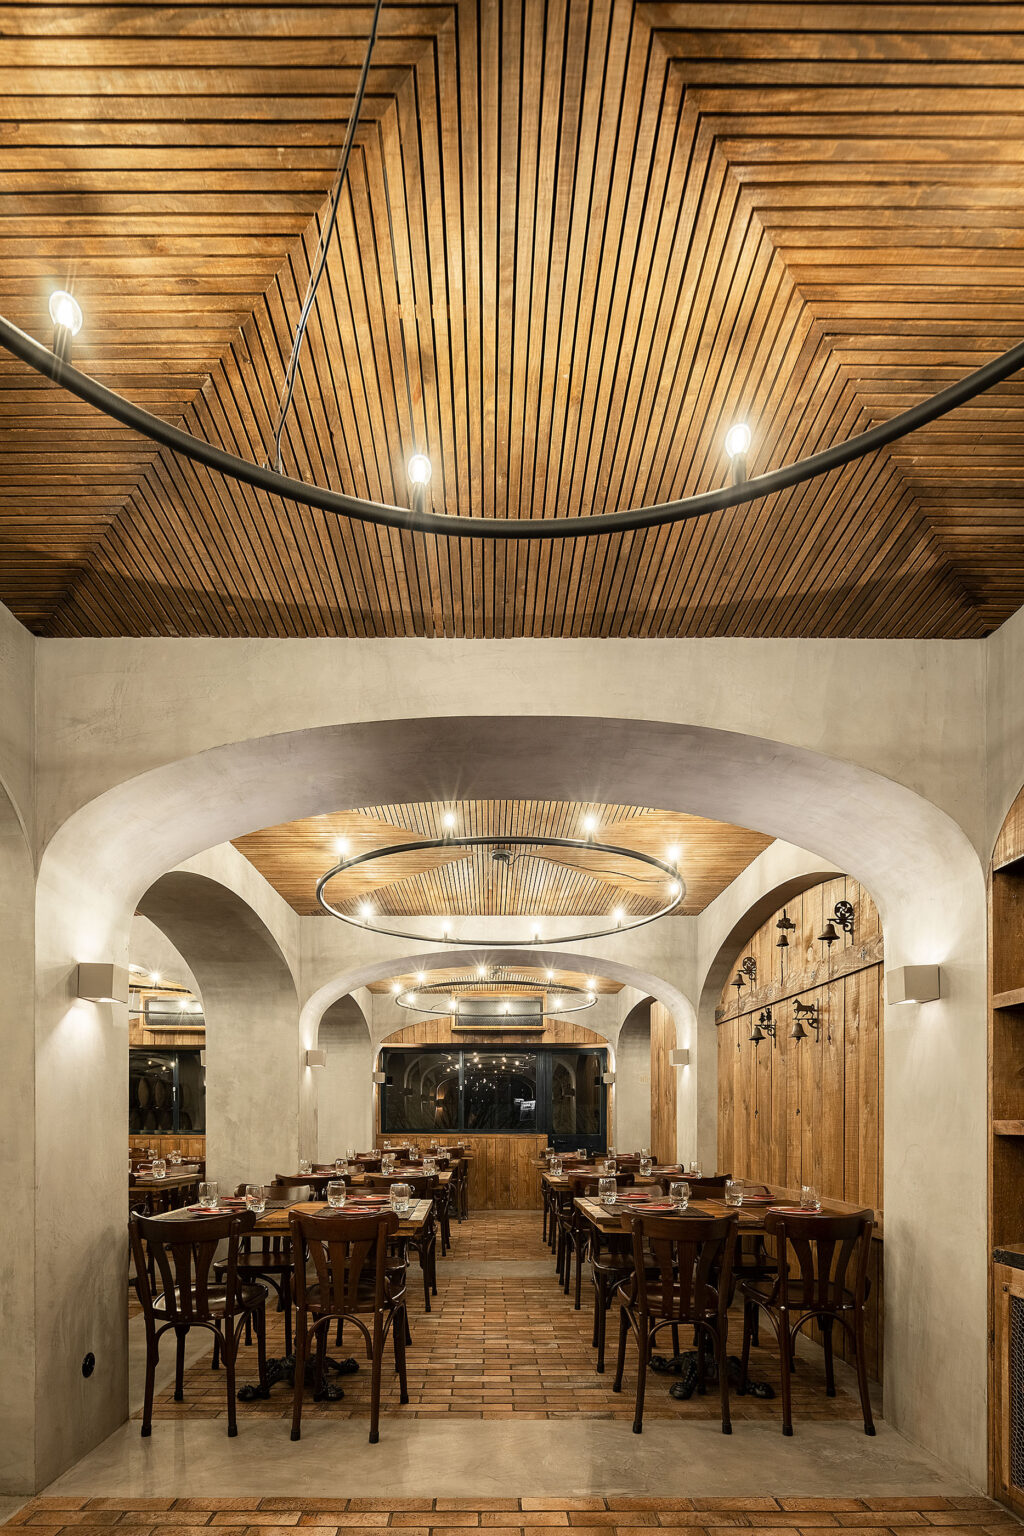 Une expérience unique dans une ambiance cave. Restaurant BARRIL. PAULO MERLINI architectes